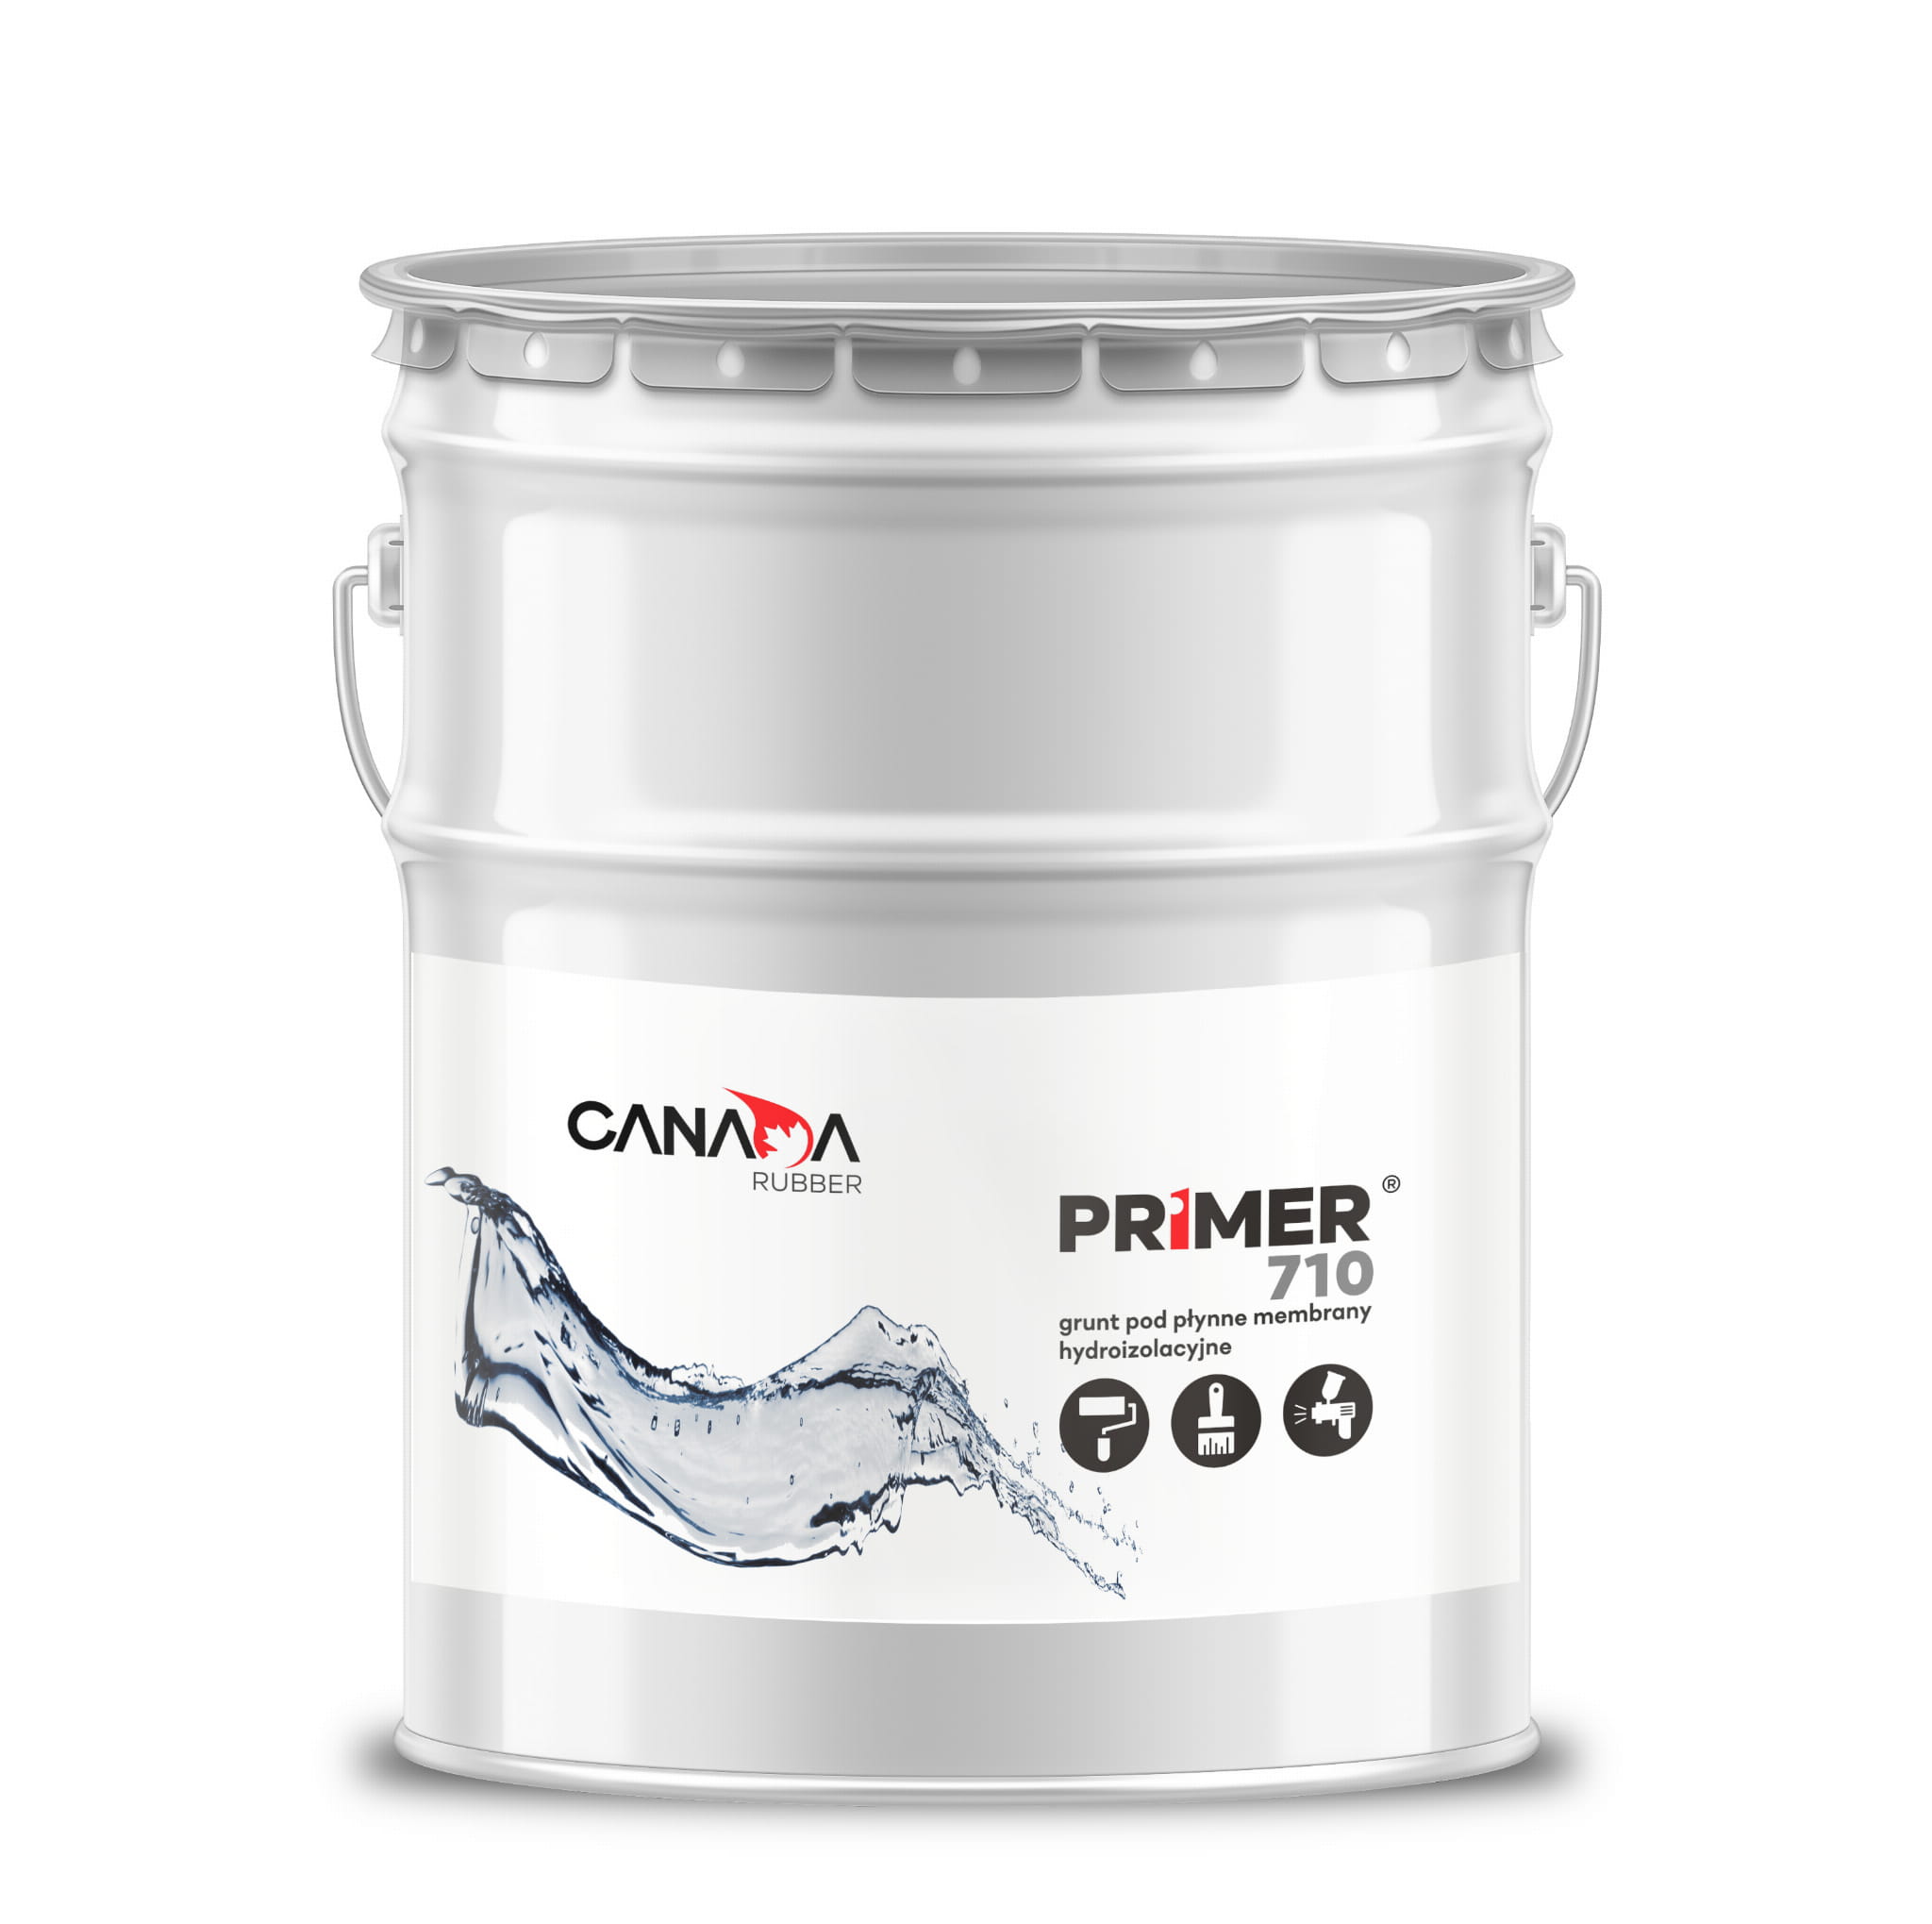 Jednoskładnikowy podkład gruntujący poliuretanowy Canada Rubber PRIMER 710, bezbarwny